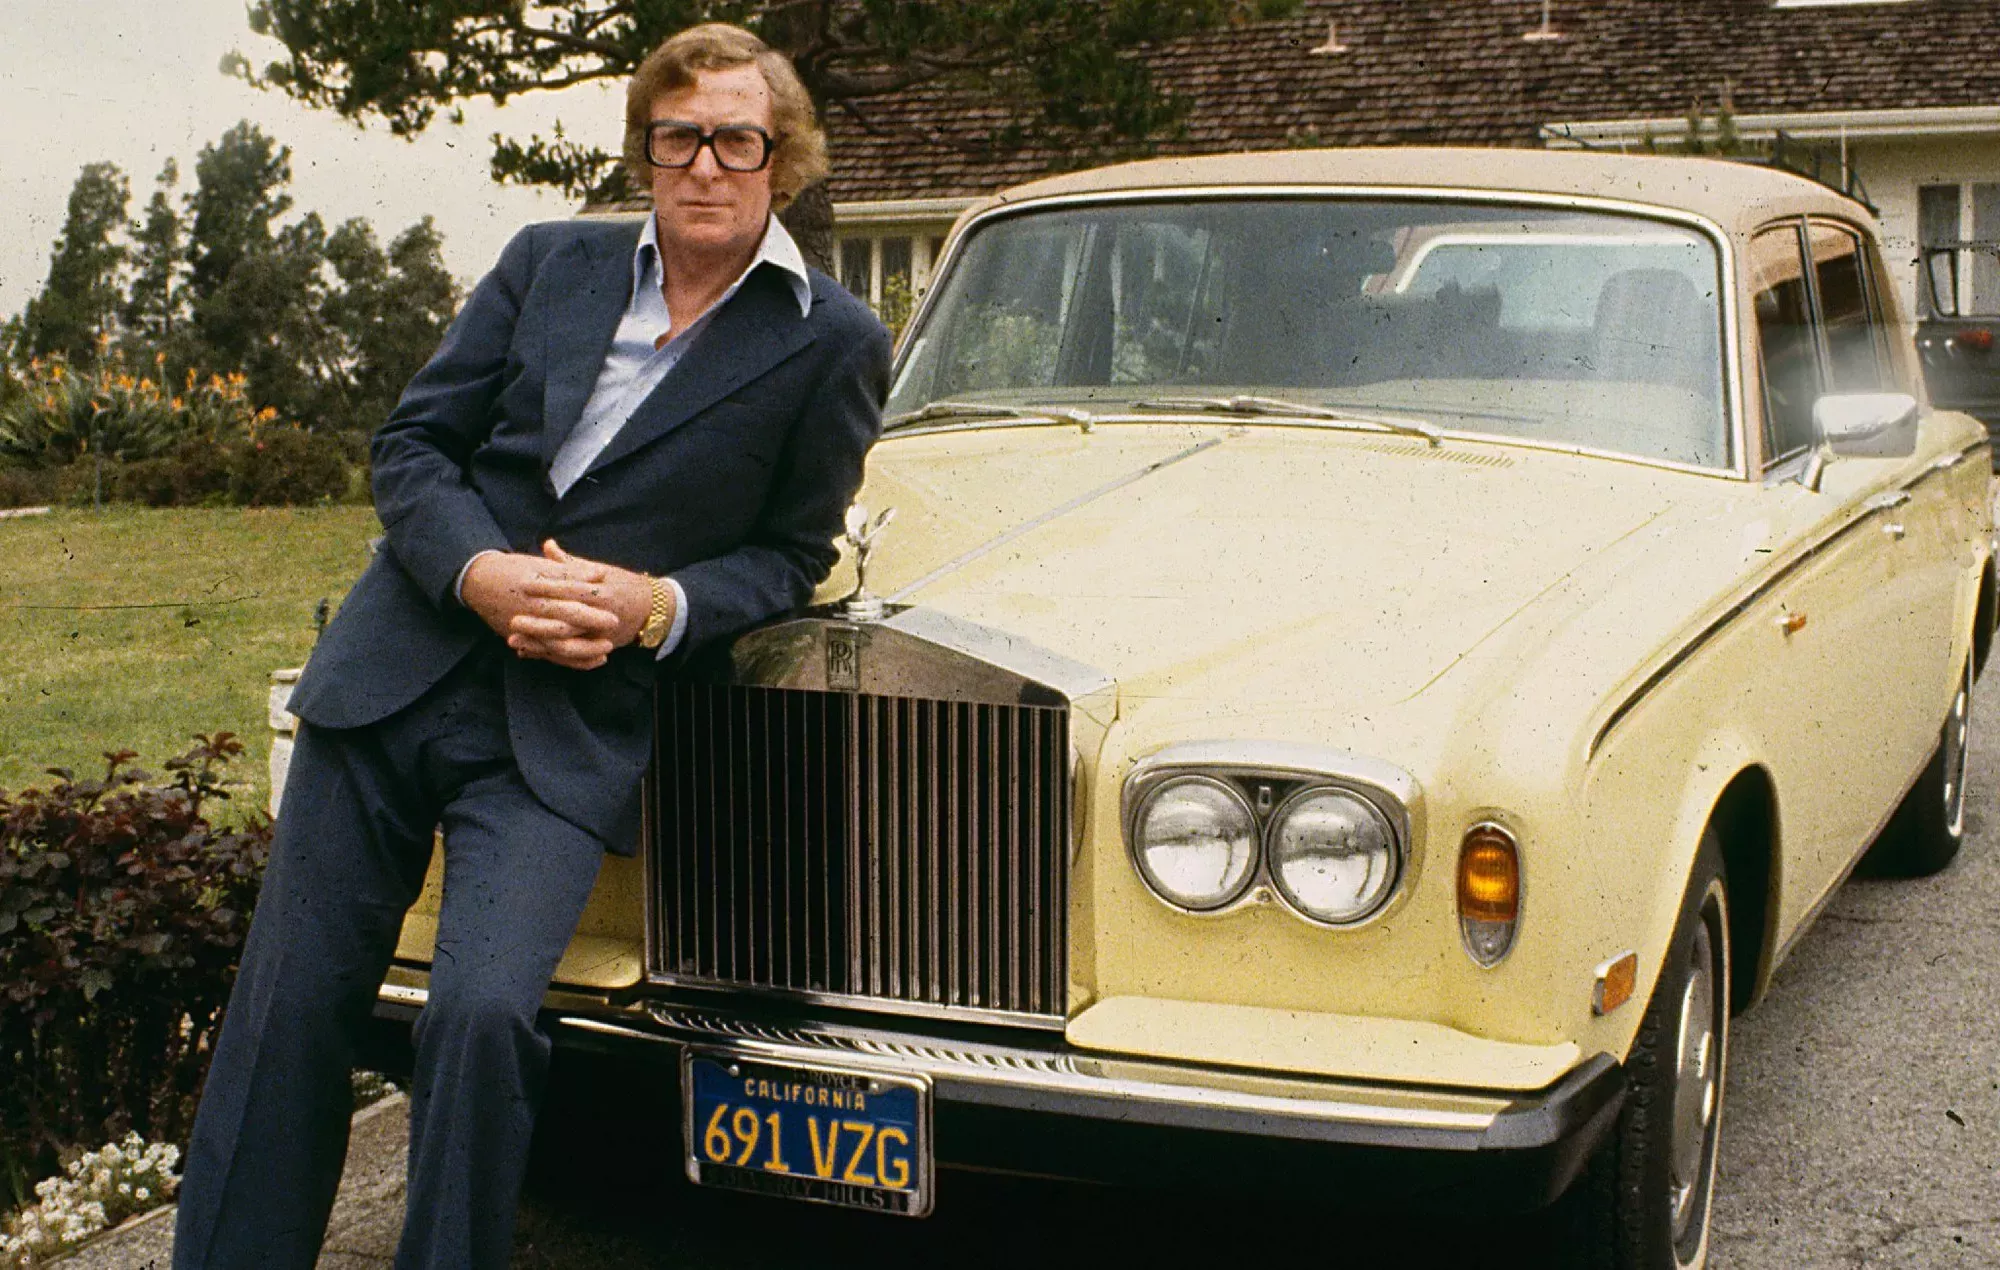 El primer coche de Sir Michael Caine, un Rolls Royce, se vende por 120.000 libras en una subasta